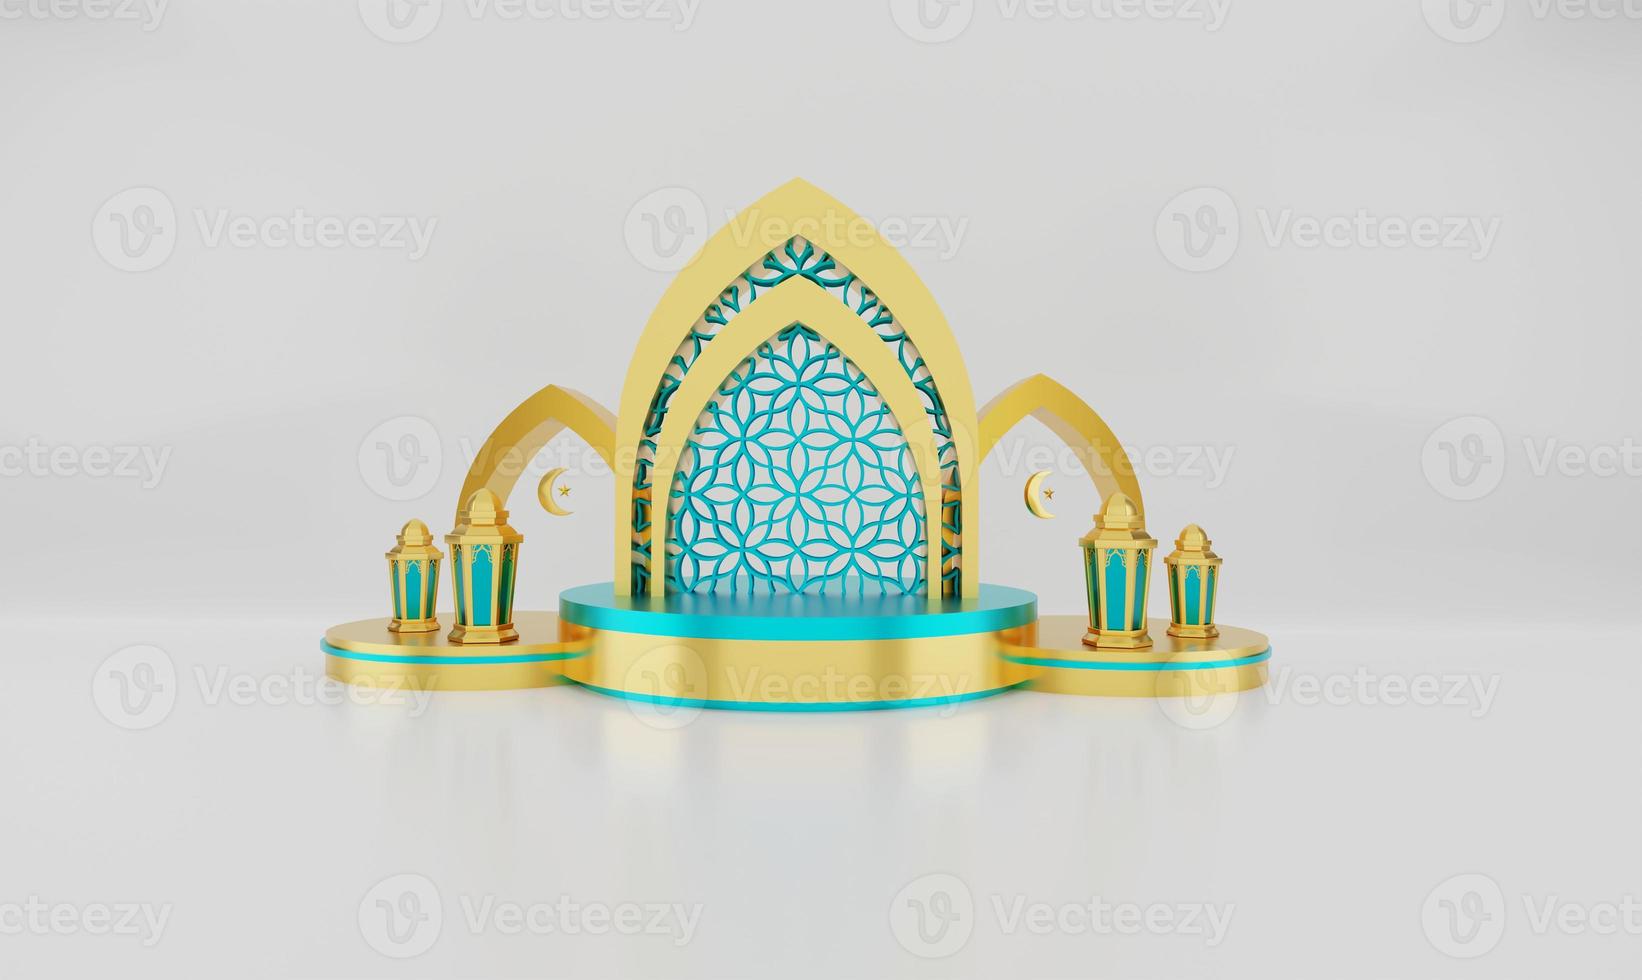 islamischer dekorationsverzierungshintergrund mit laterne. designkonzept von ramadan kareem, iftar, isra miraj, eid al fitr adha, muharram, kopierraumtext, 3d-illustration. foto